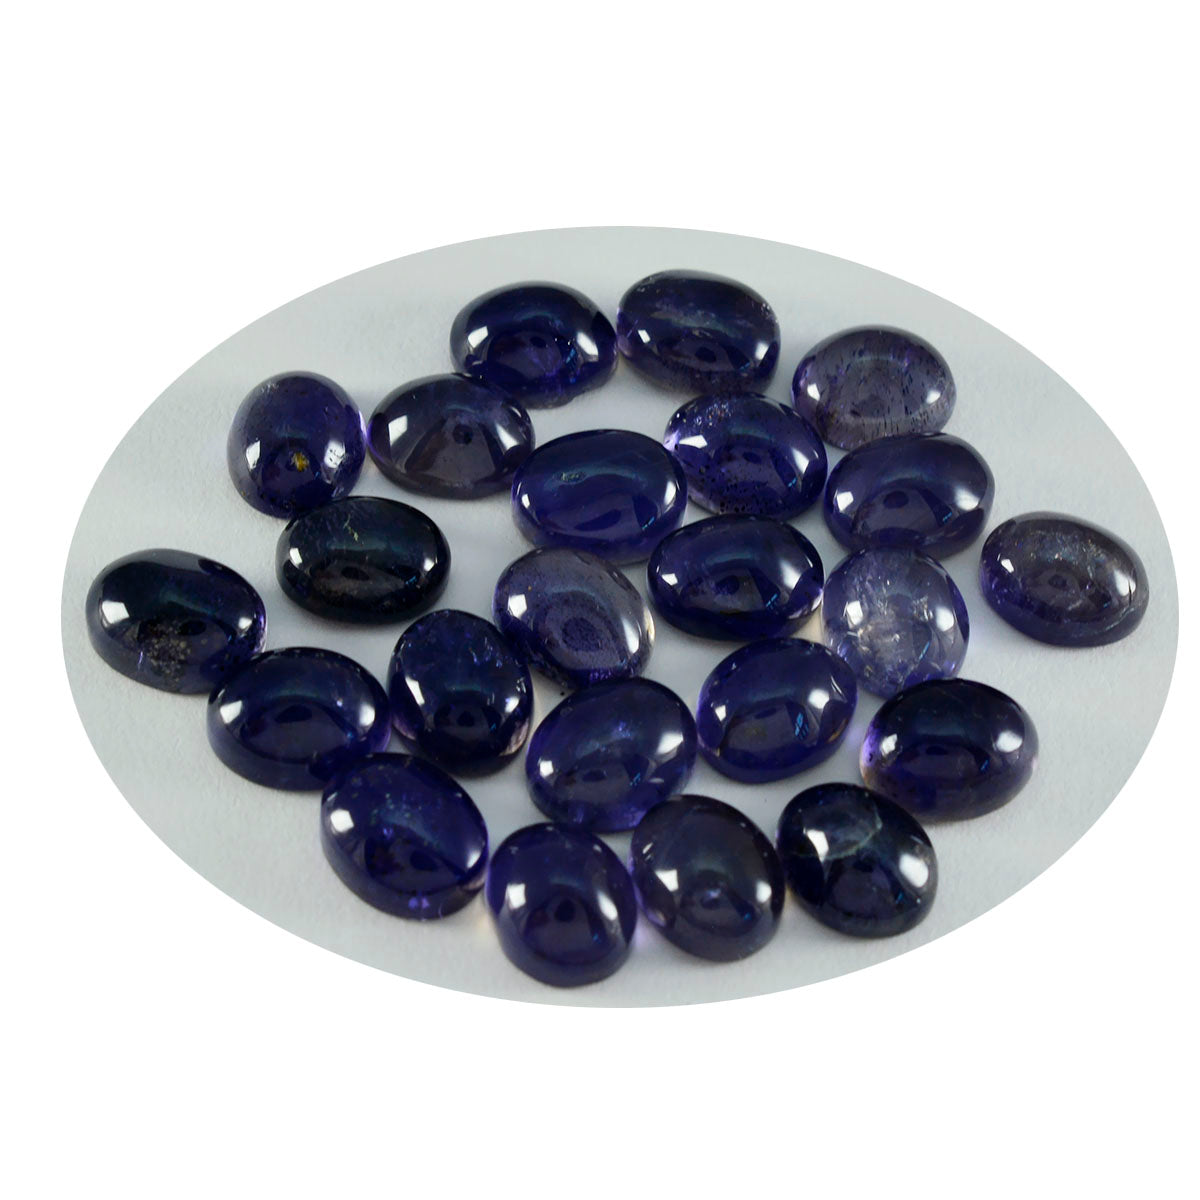 riyogems 1 шт. синий иолит кабошон 9x11 мм овальной формы прекрасное качество россыпь драгоценных камней